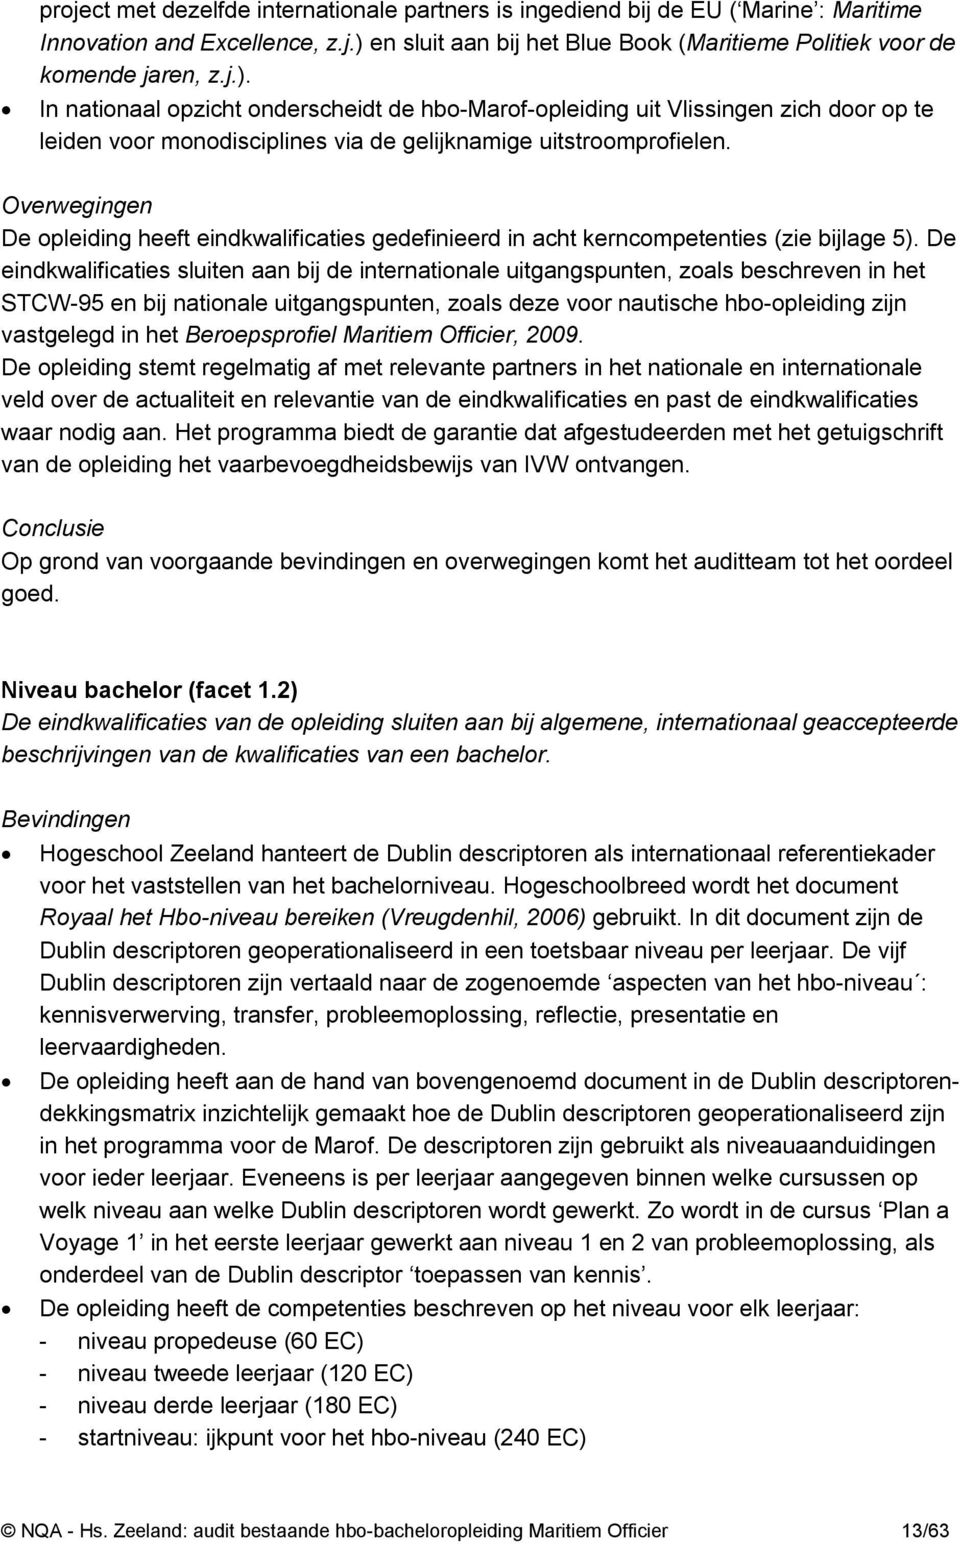 In nationaal opzicht onderscheidt de hbo-marof-opleiding uit Vlissingen zich door op te leiden voor monodisciplines via de gelijknamige uitstroomprofielen.